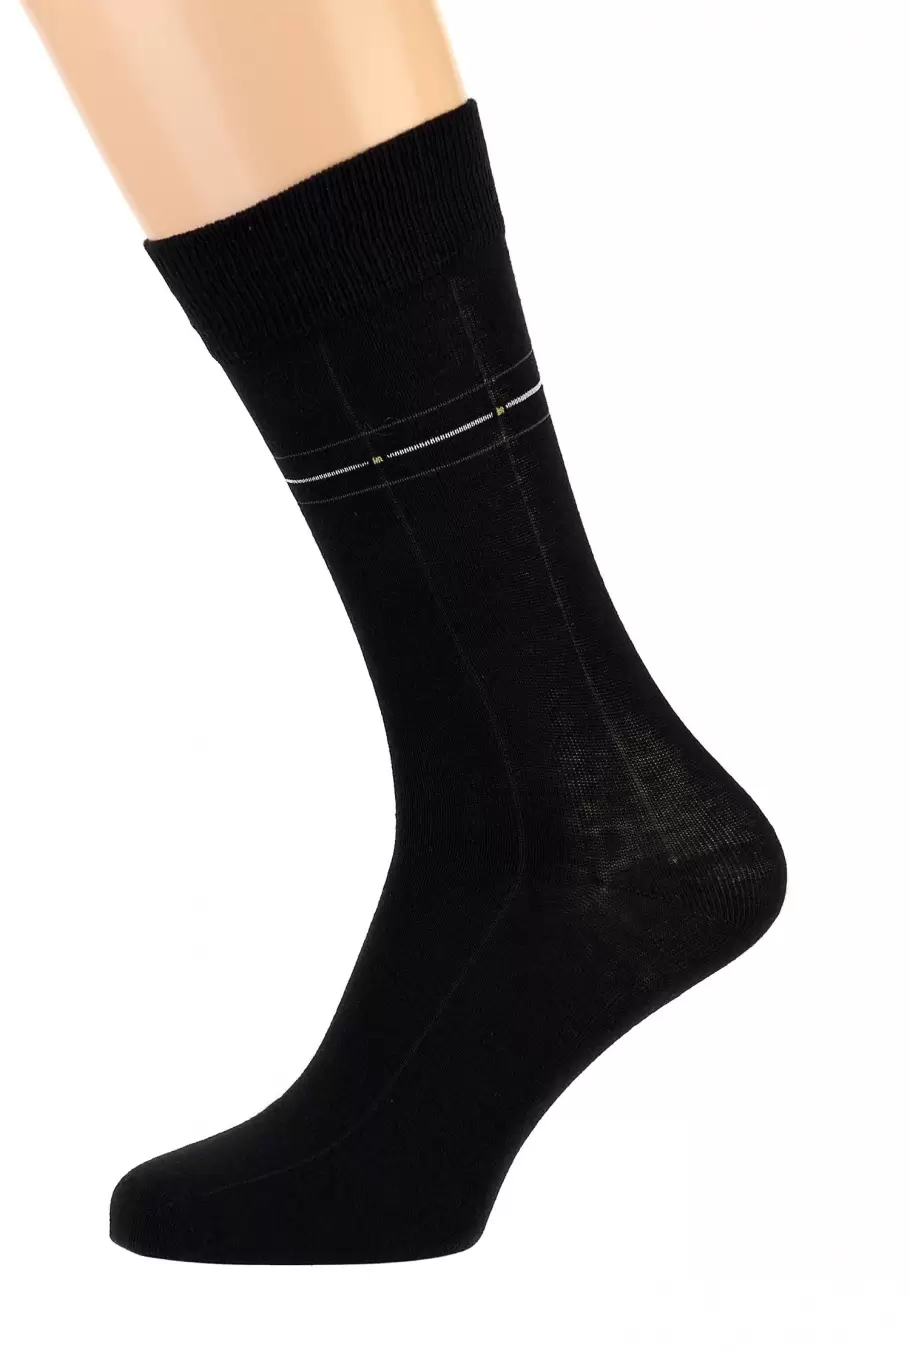 Pingons 8A14, мужские носки (изображение 1)